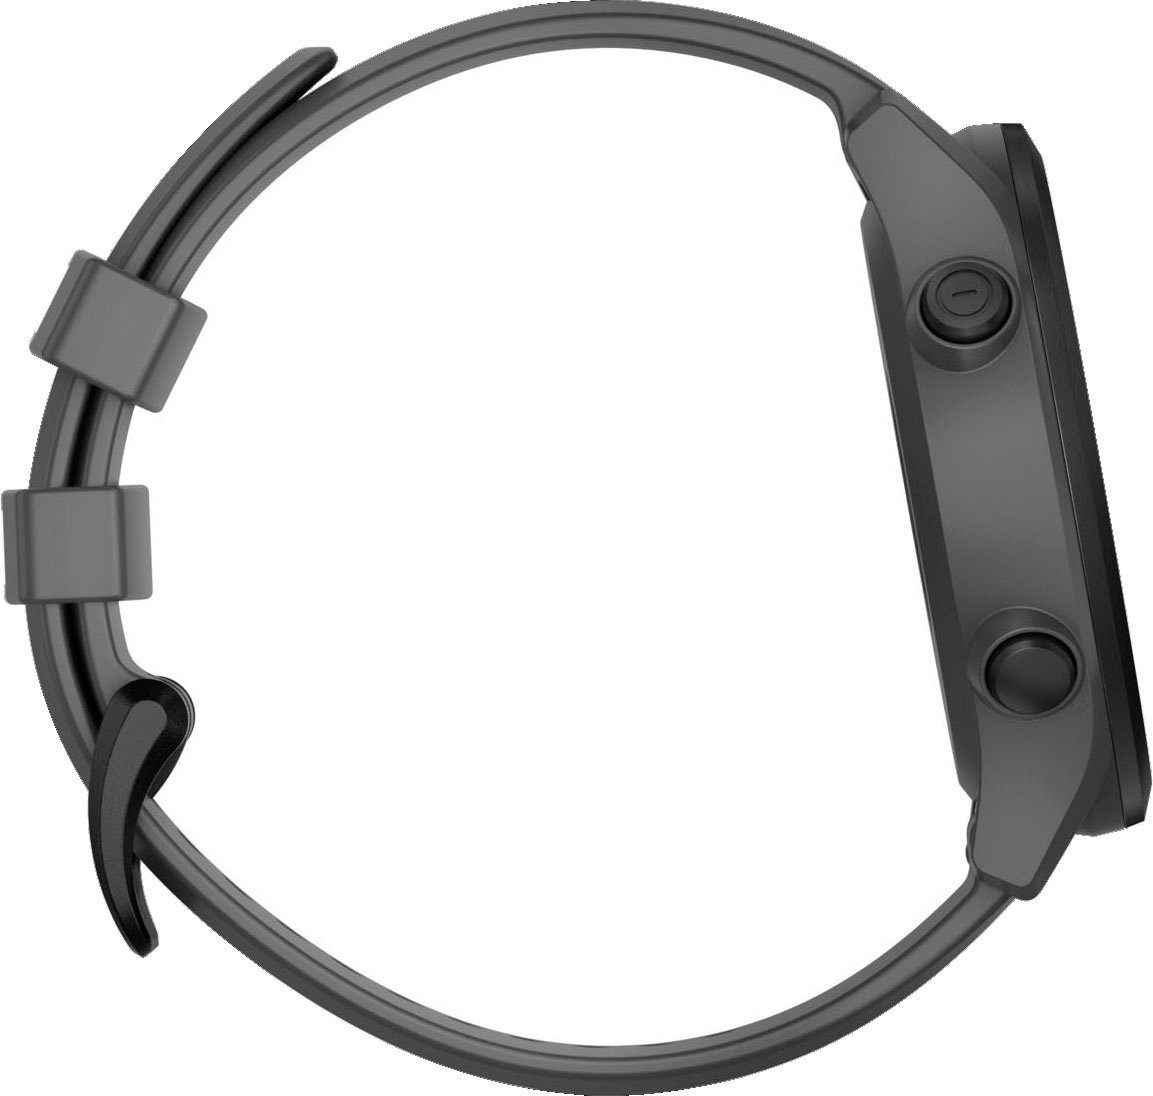 cm/1,3 Smartwatch (3,3 2022 APPROACH grau Garmin) S12 grau/schwarz Garmin | Zoll, Edition